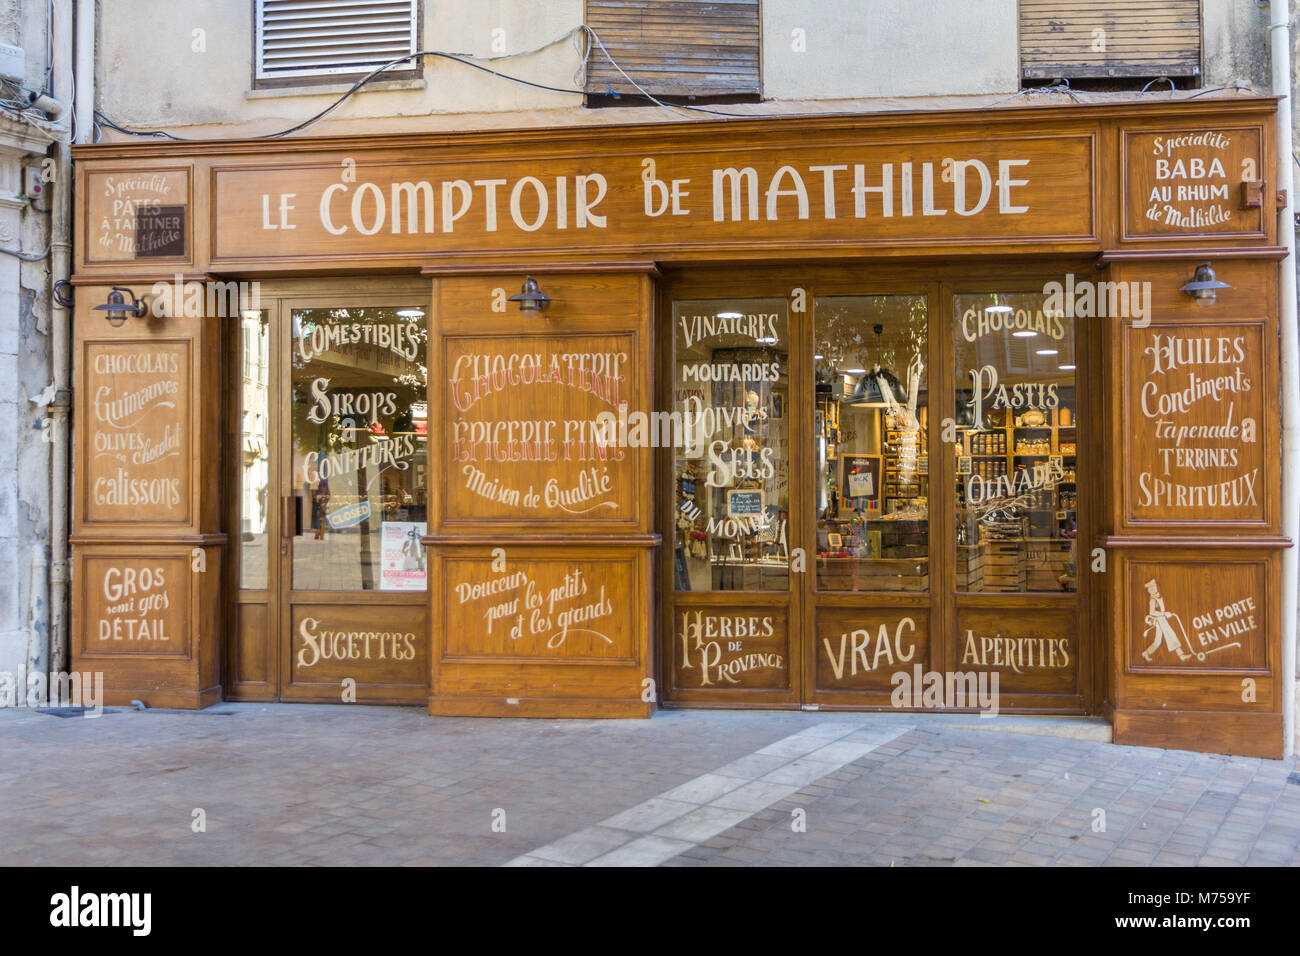 Le Comptoire de Mathilde, Shop, Toulon, Frankreich Stockfoto